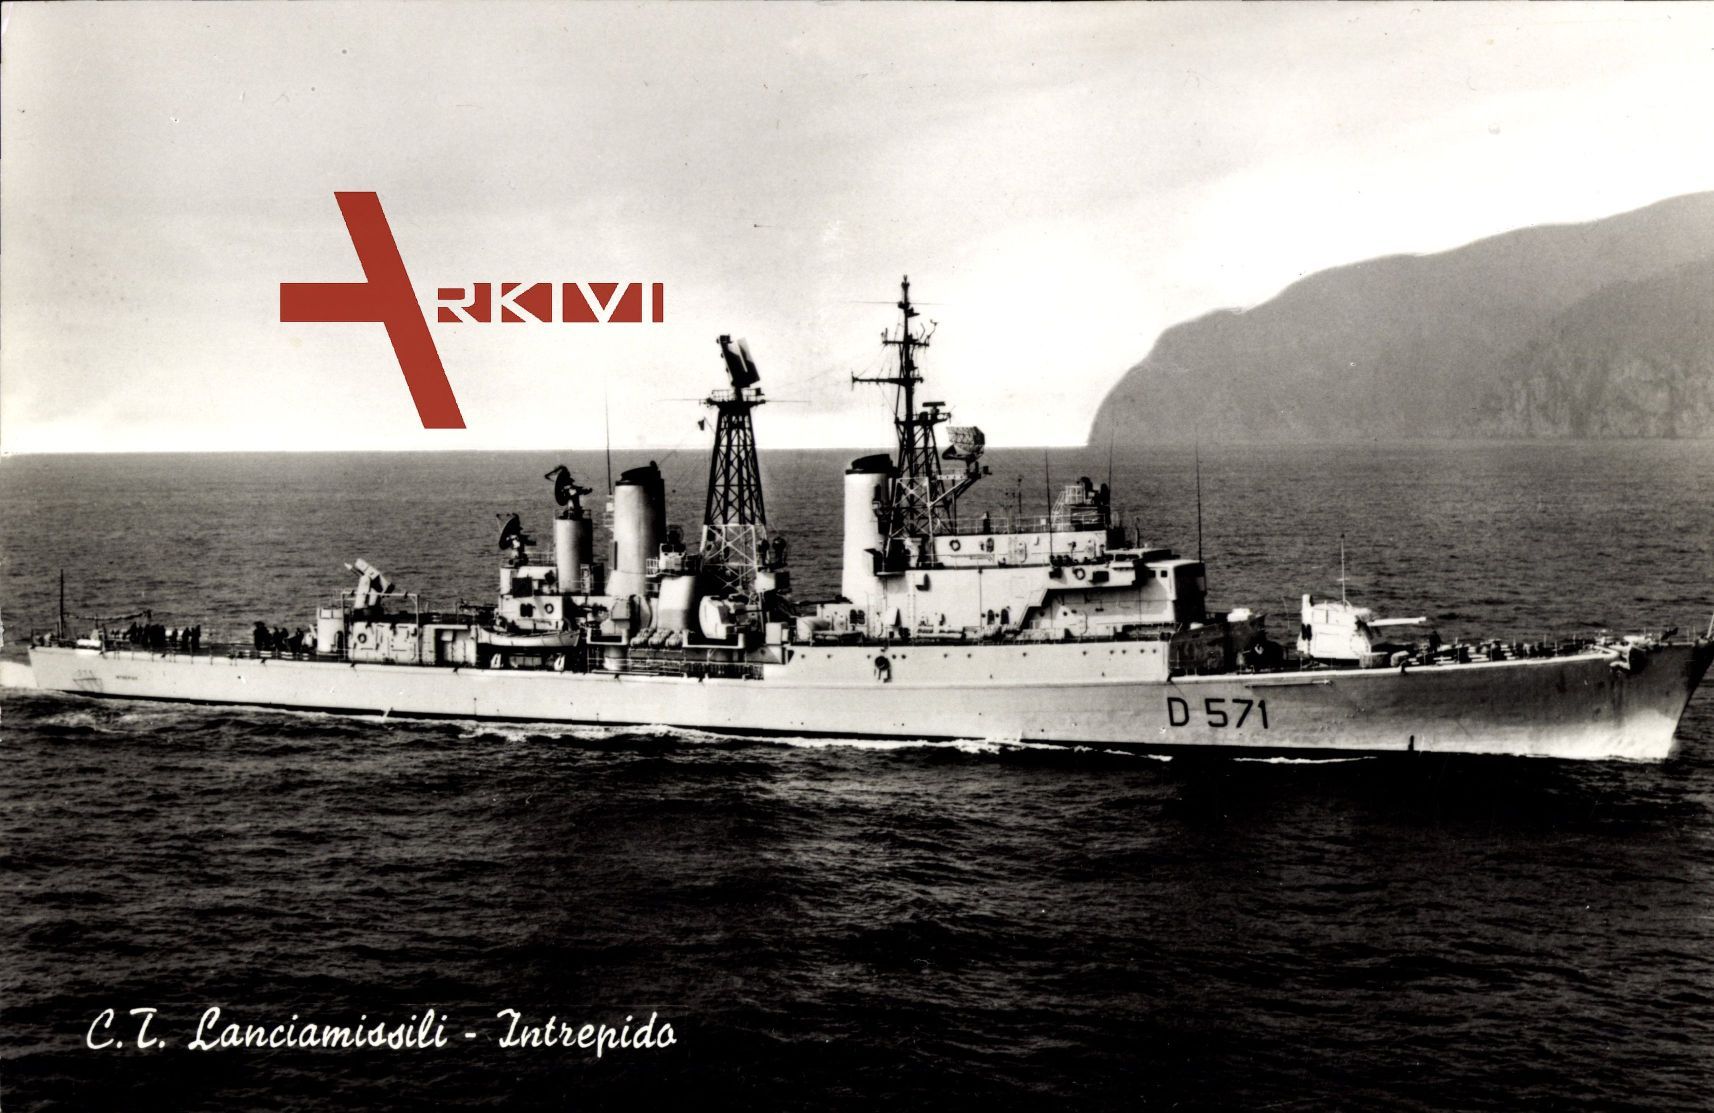 Italienisches Kriegsschiff, CT Lanciamissili, Intrepido, D 571